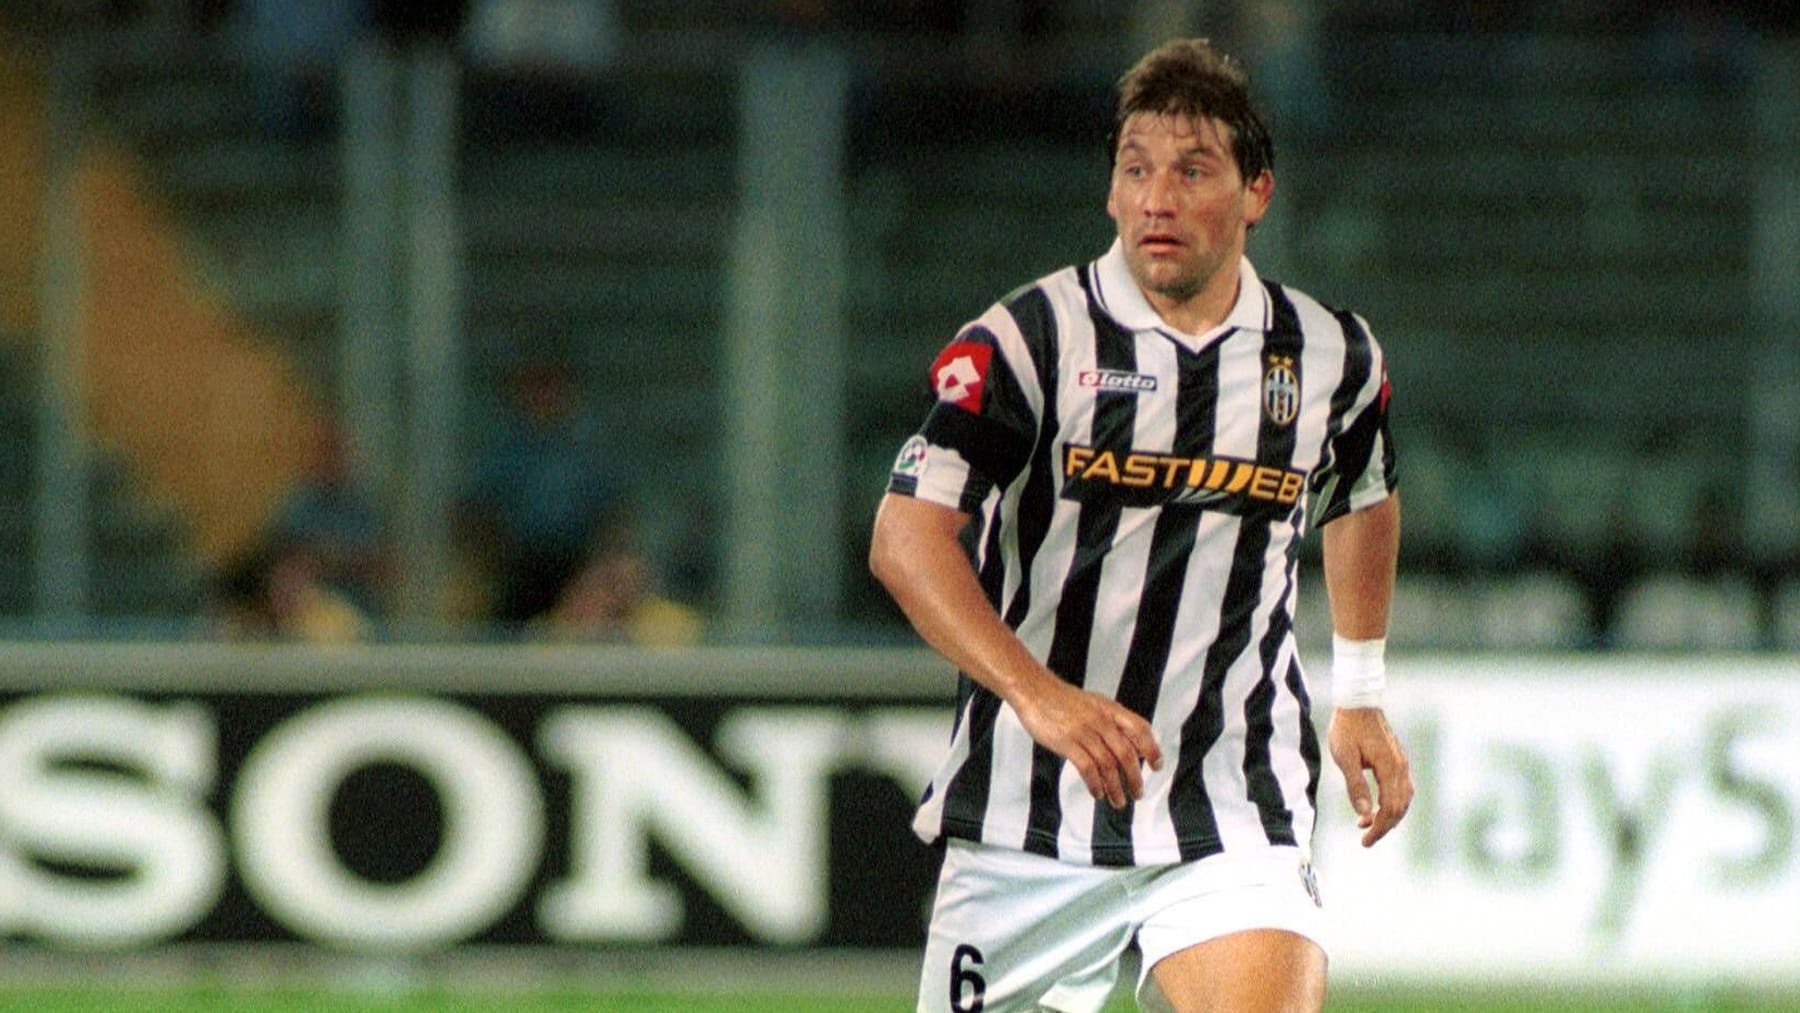 Il professionista della Juventus Fabian O’Neill è morto – aveva solo 49 anni